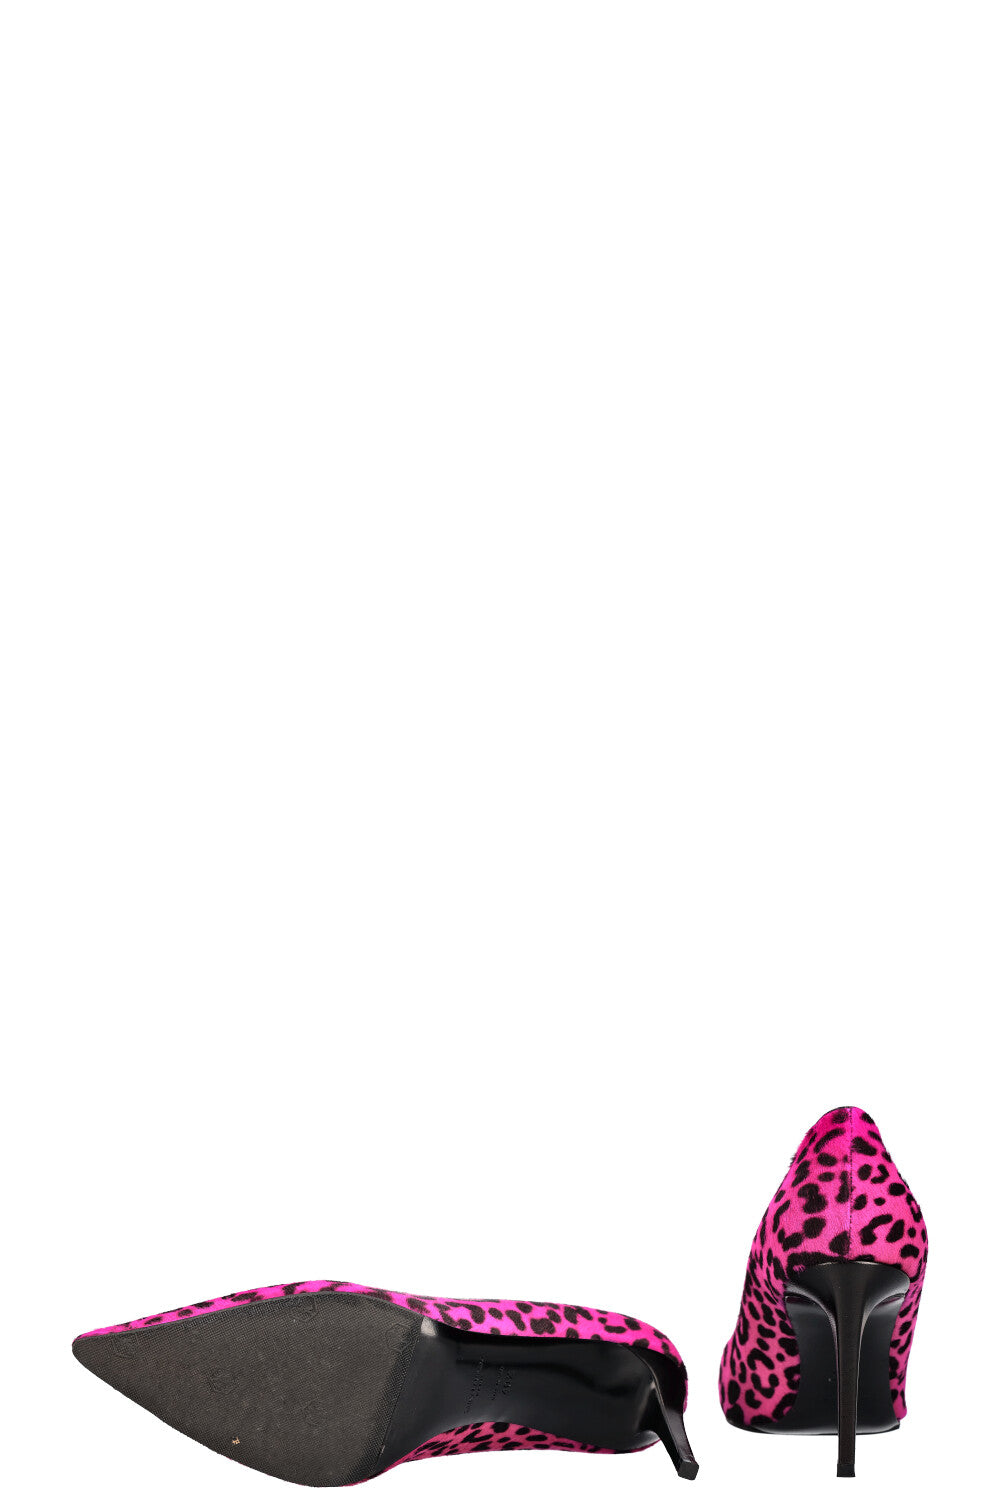 SAINT LAURENT Heels Cheetah Pink